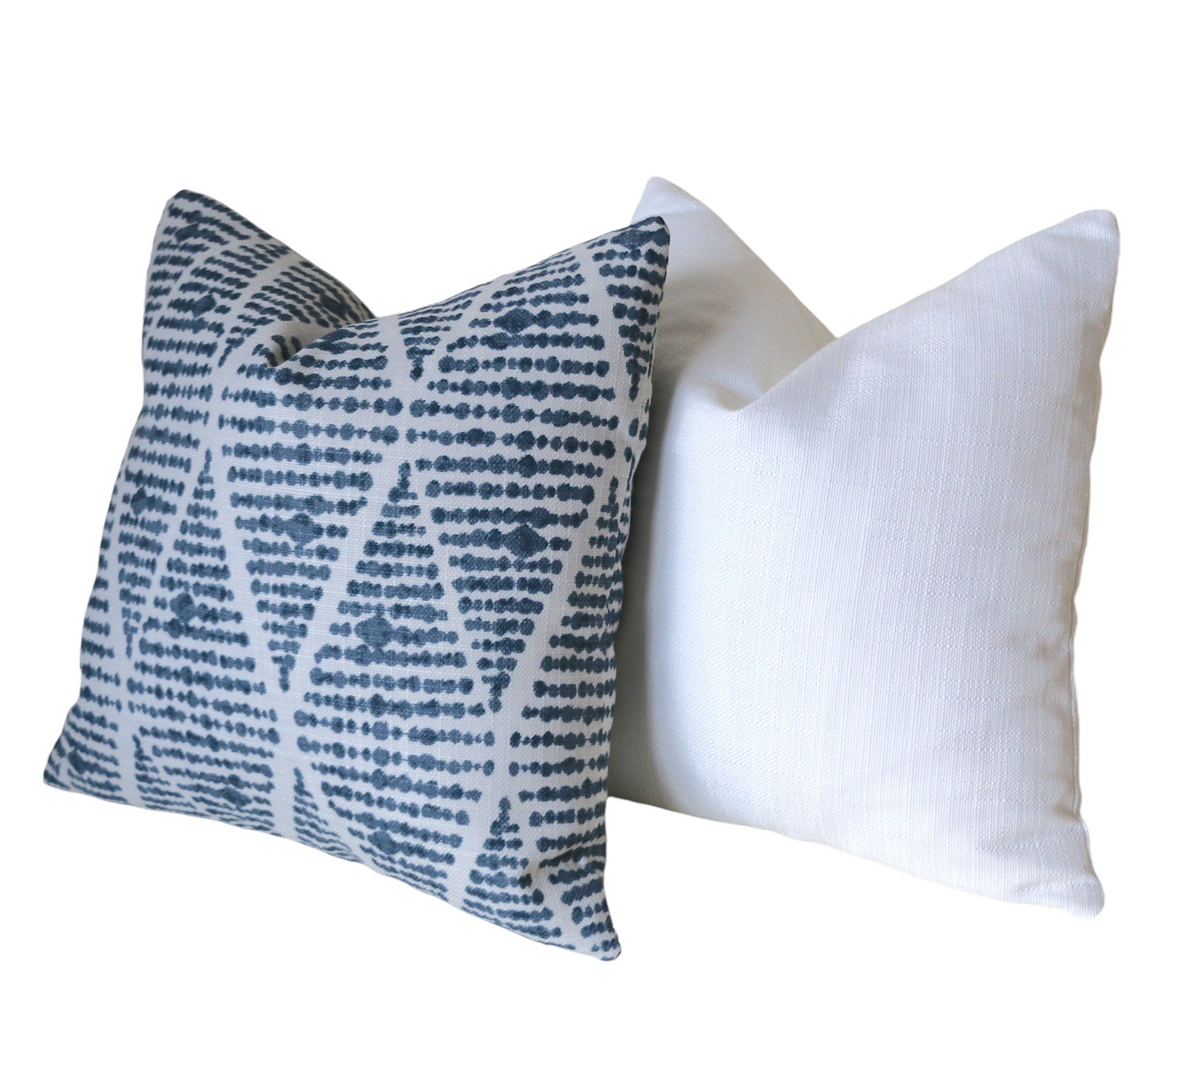 Indigo Collection: Boho Outdoor Pillow Cover / Navy Outdoor Pillow cover /  Blue Patio Pillow / White Pillow Cover / Outdoor 20x20 22x22